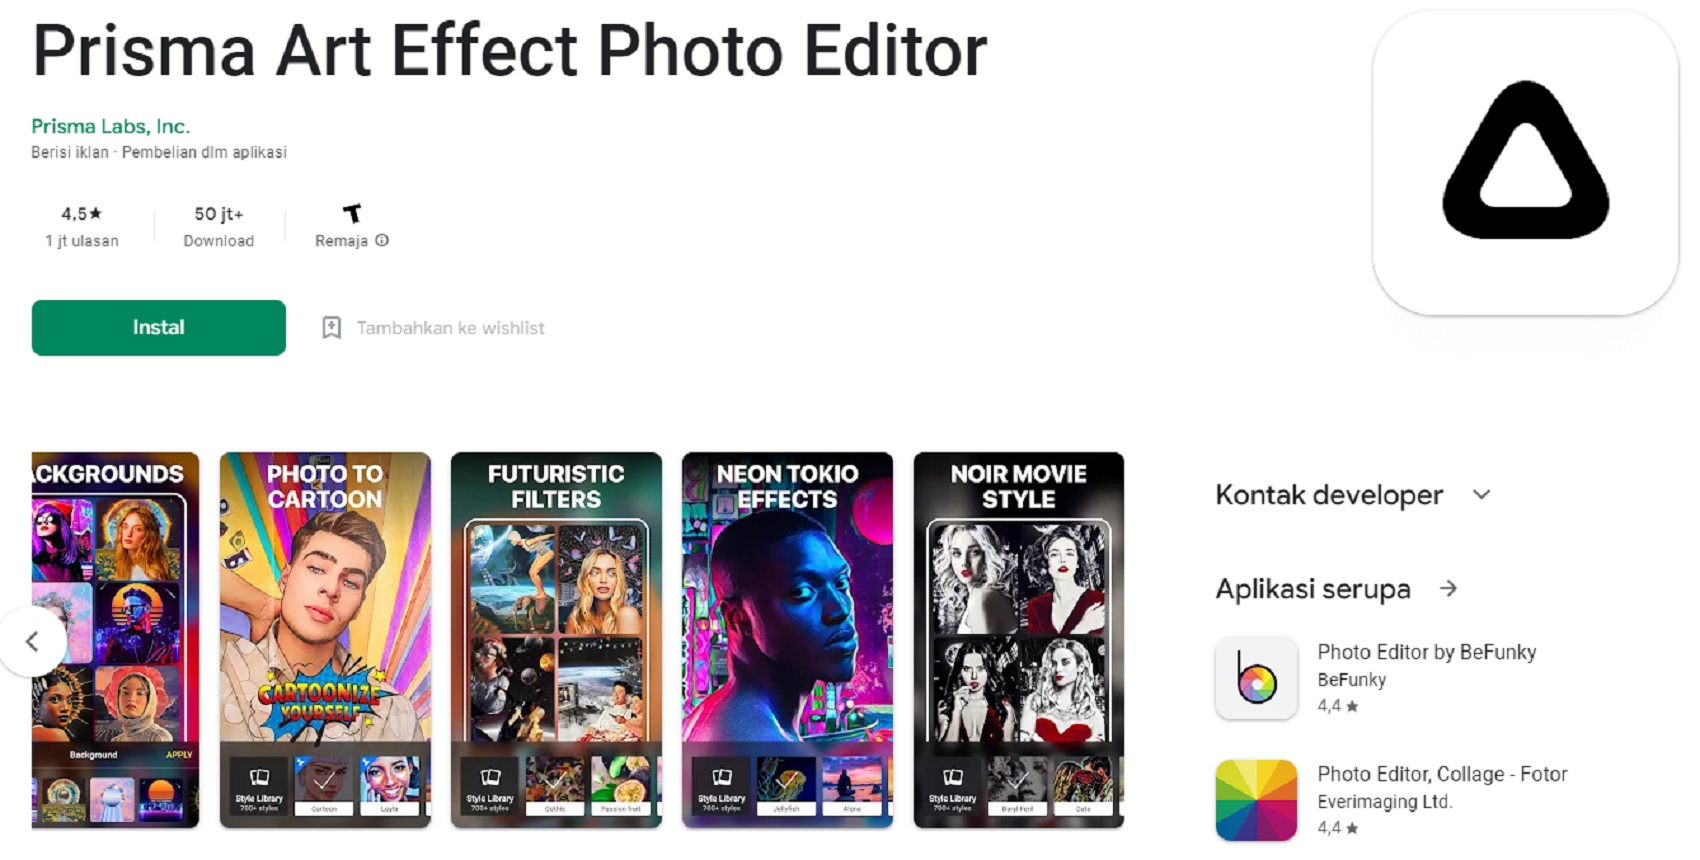 Prisma Art Effect Photo Editor, Bikin Wajah 2 Dimensi!